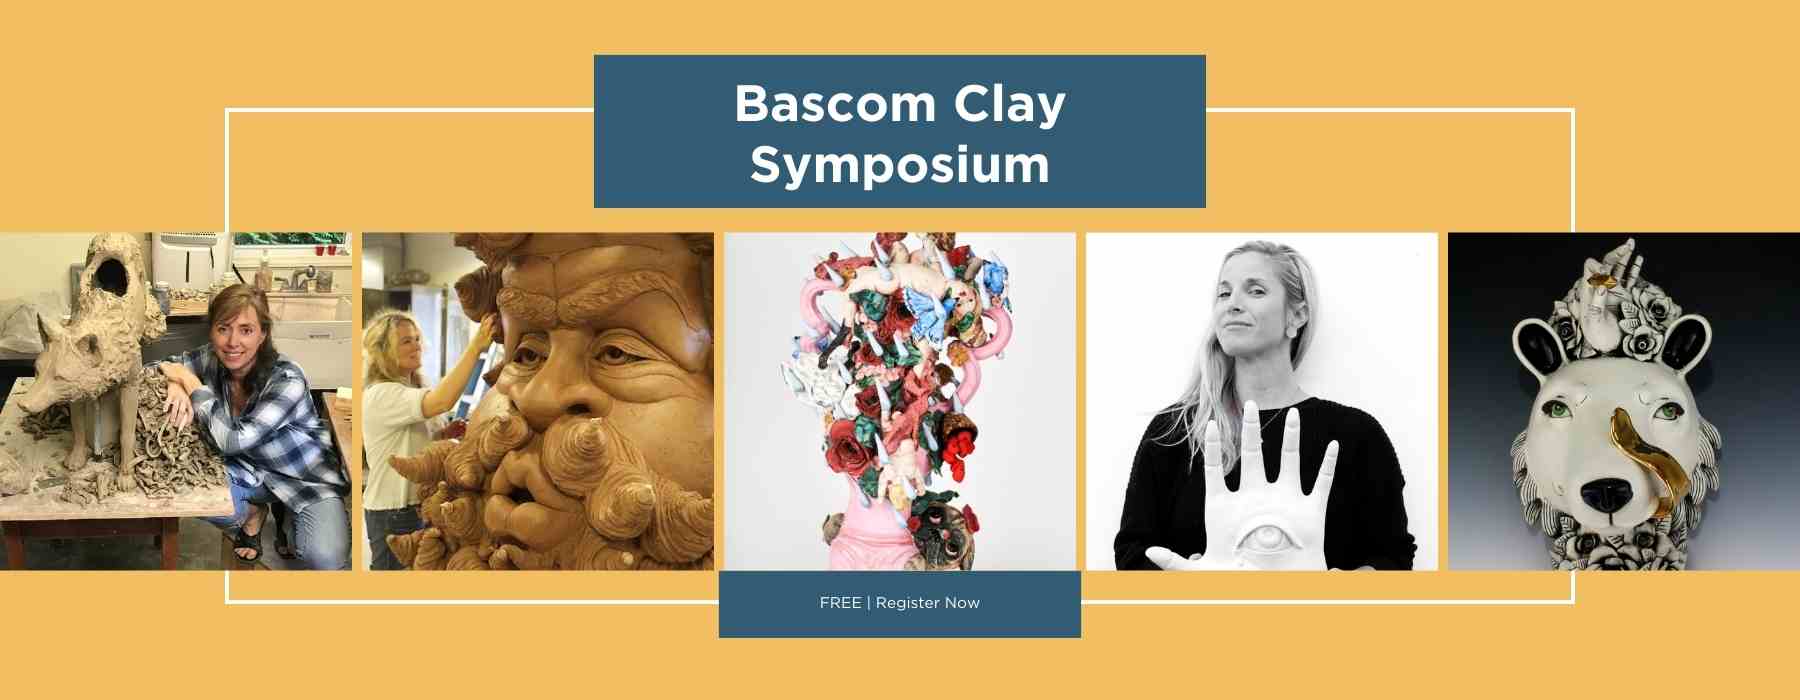 Bascom Clay Symposium